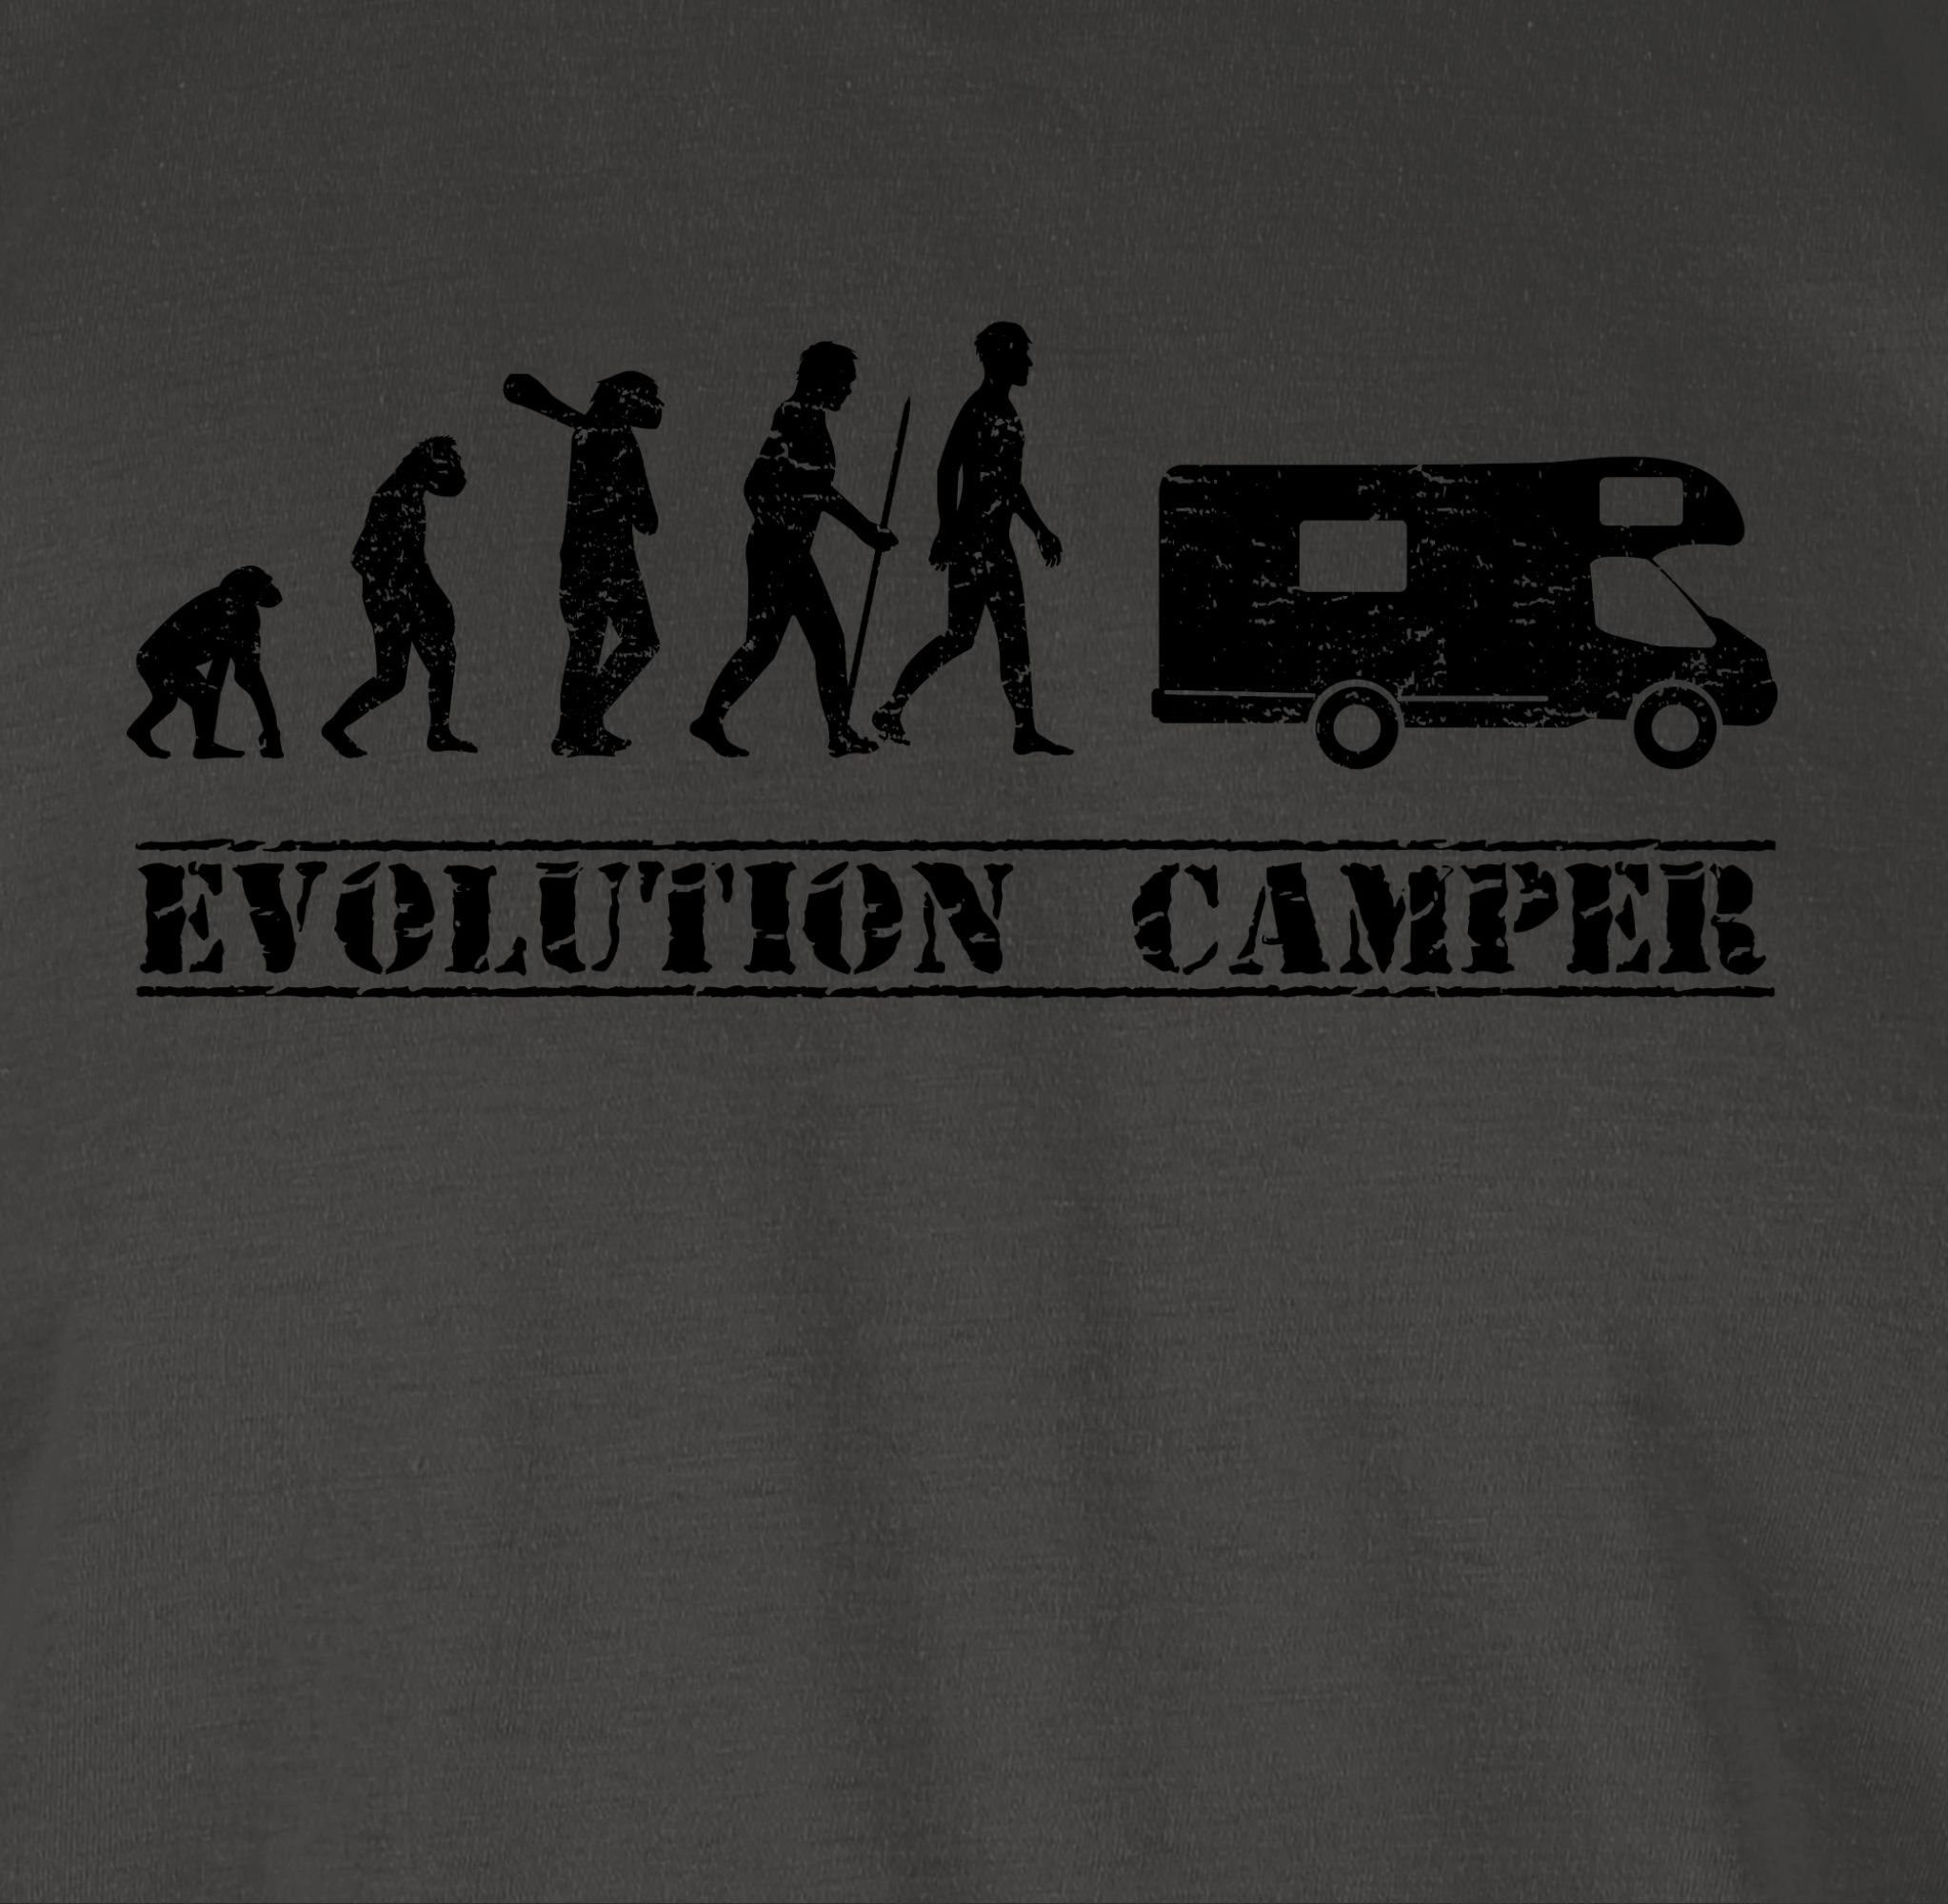 Herren Shirts Shirtracer T-Shirt Evolution Camper - Evolution Outfit - Herren Premium T-Shirt Entwicklung und Geschichte